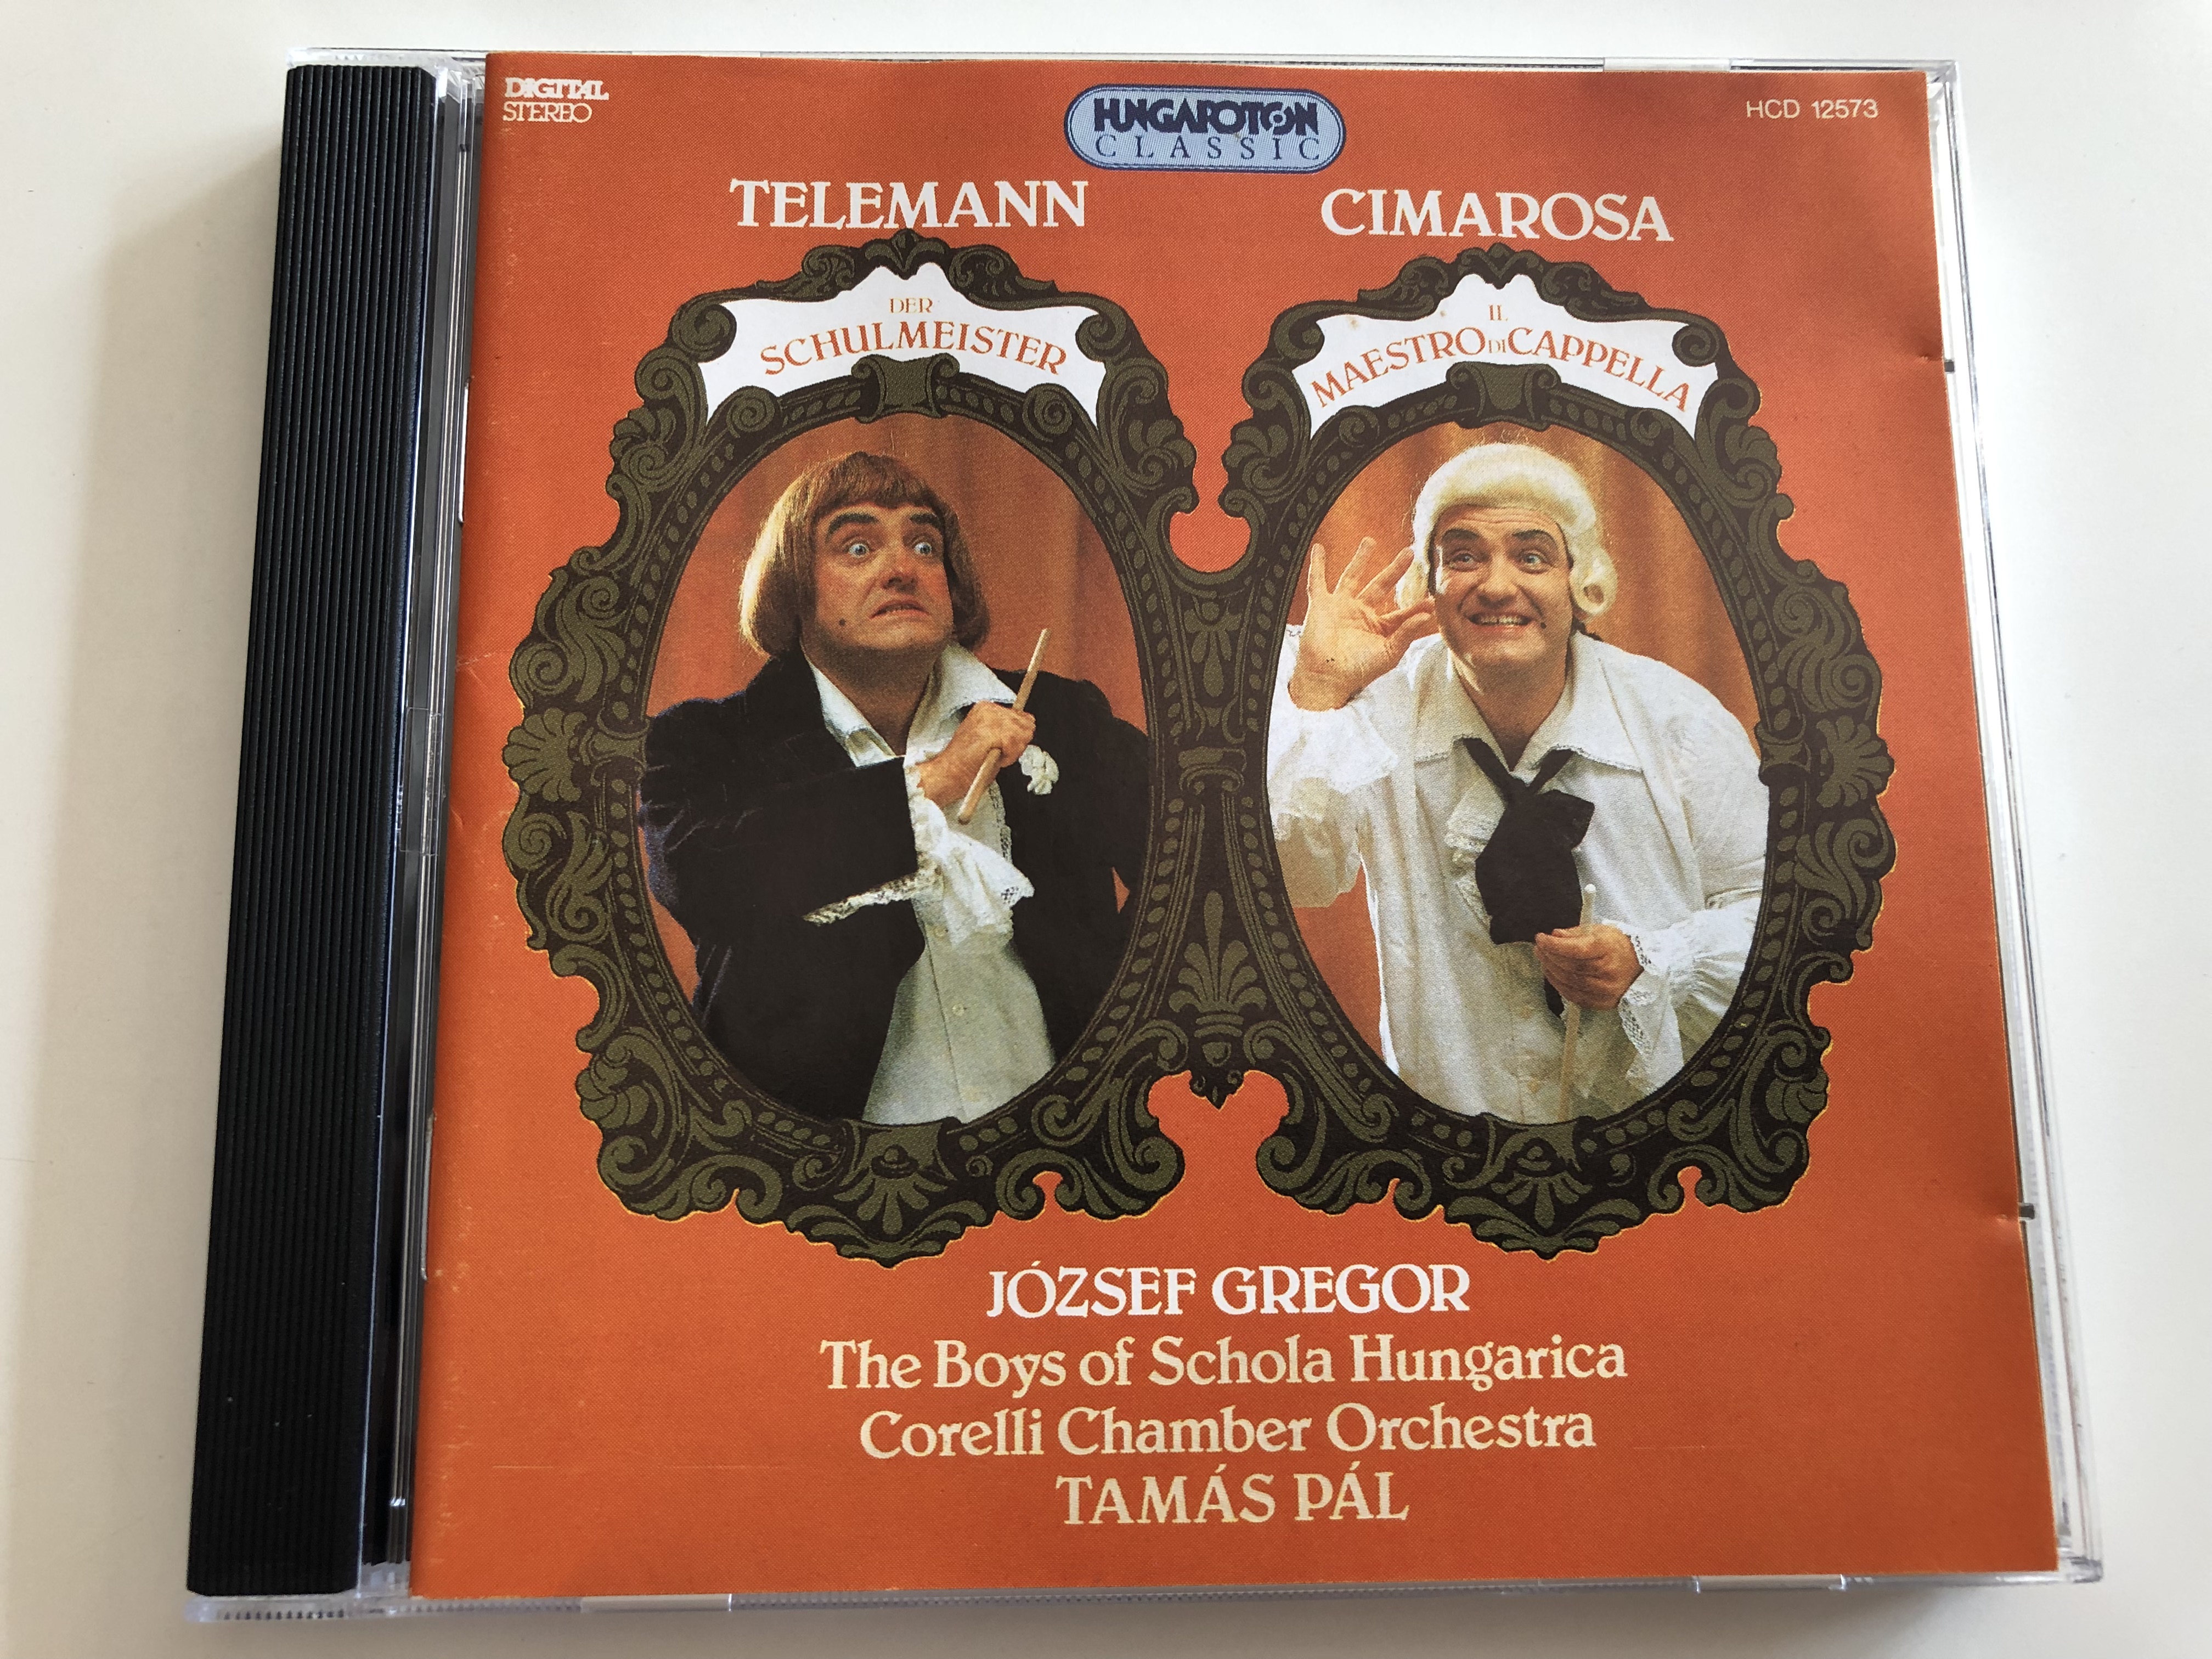 telemann-der-schulmeister-cimarosa-il-maestro-di-cappella-j-zsef-gregor-the-boys-of-schola-hungarica-corelli-chamber-orchestra-tam-s-p-l-hcd-12573-hungaroton-audio-cd-1994-5991811257323-.jpg